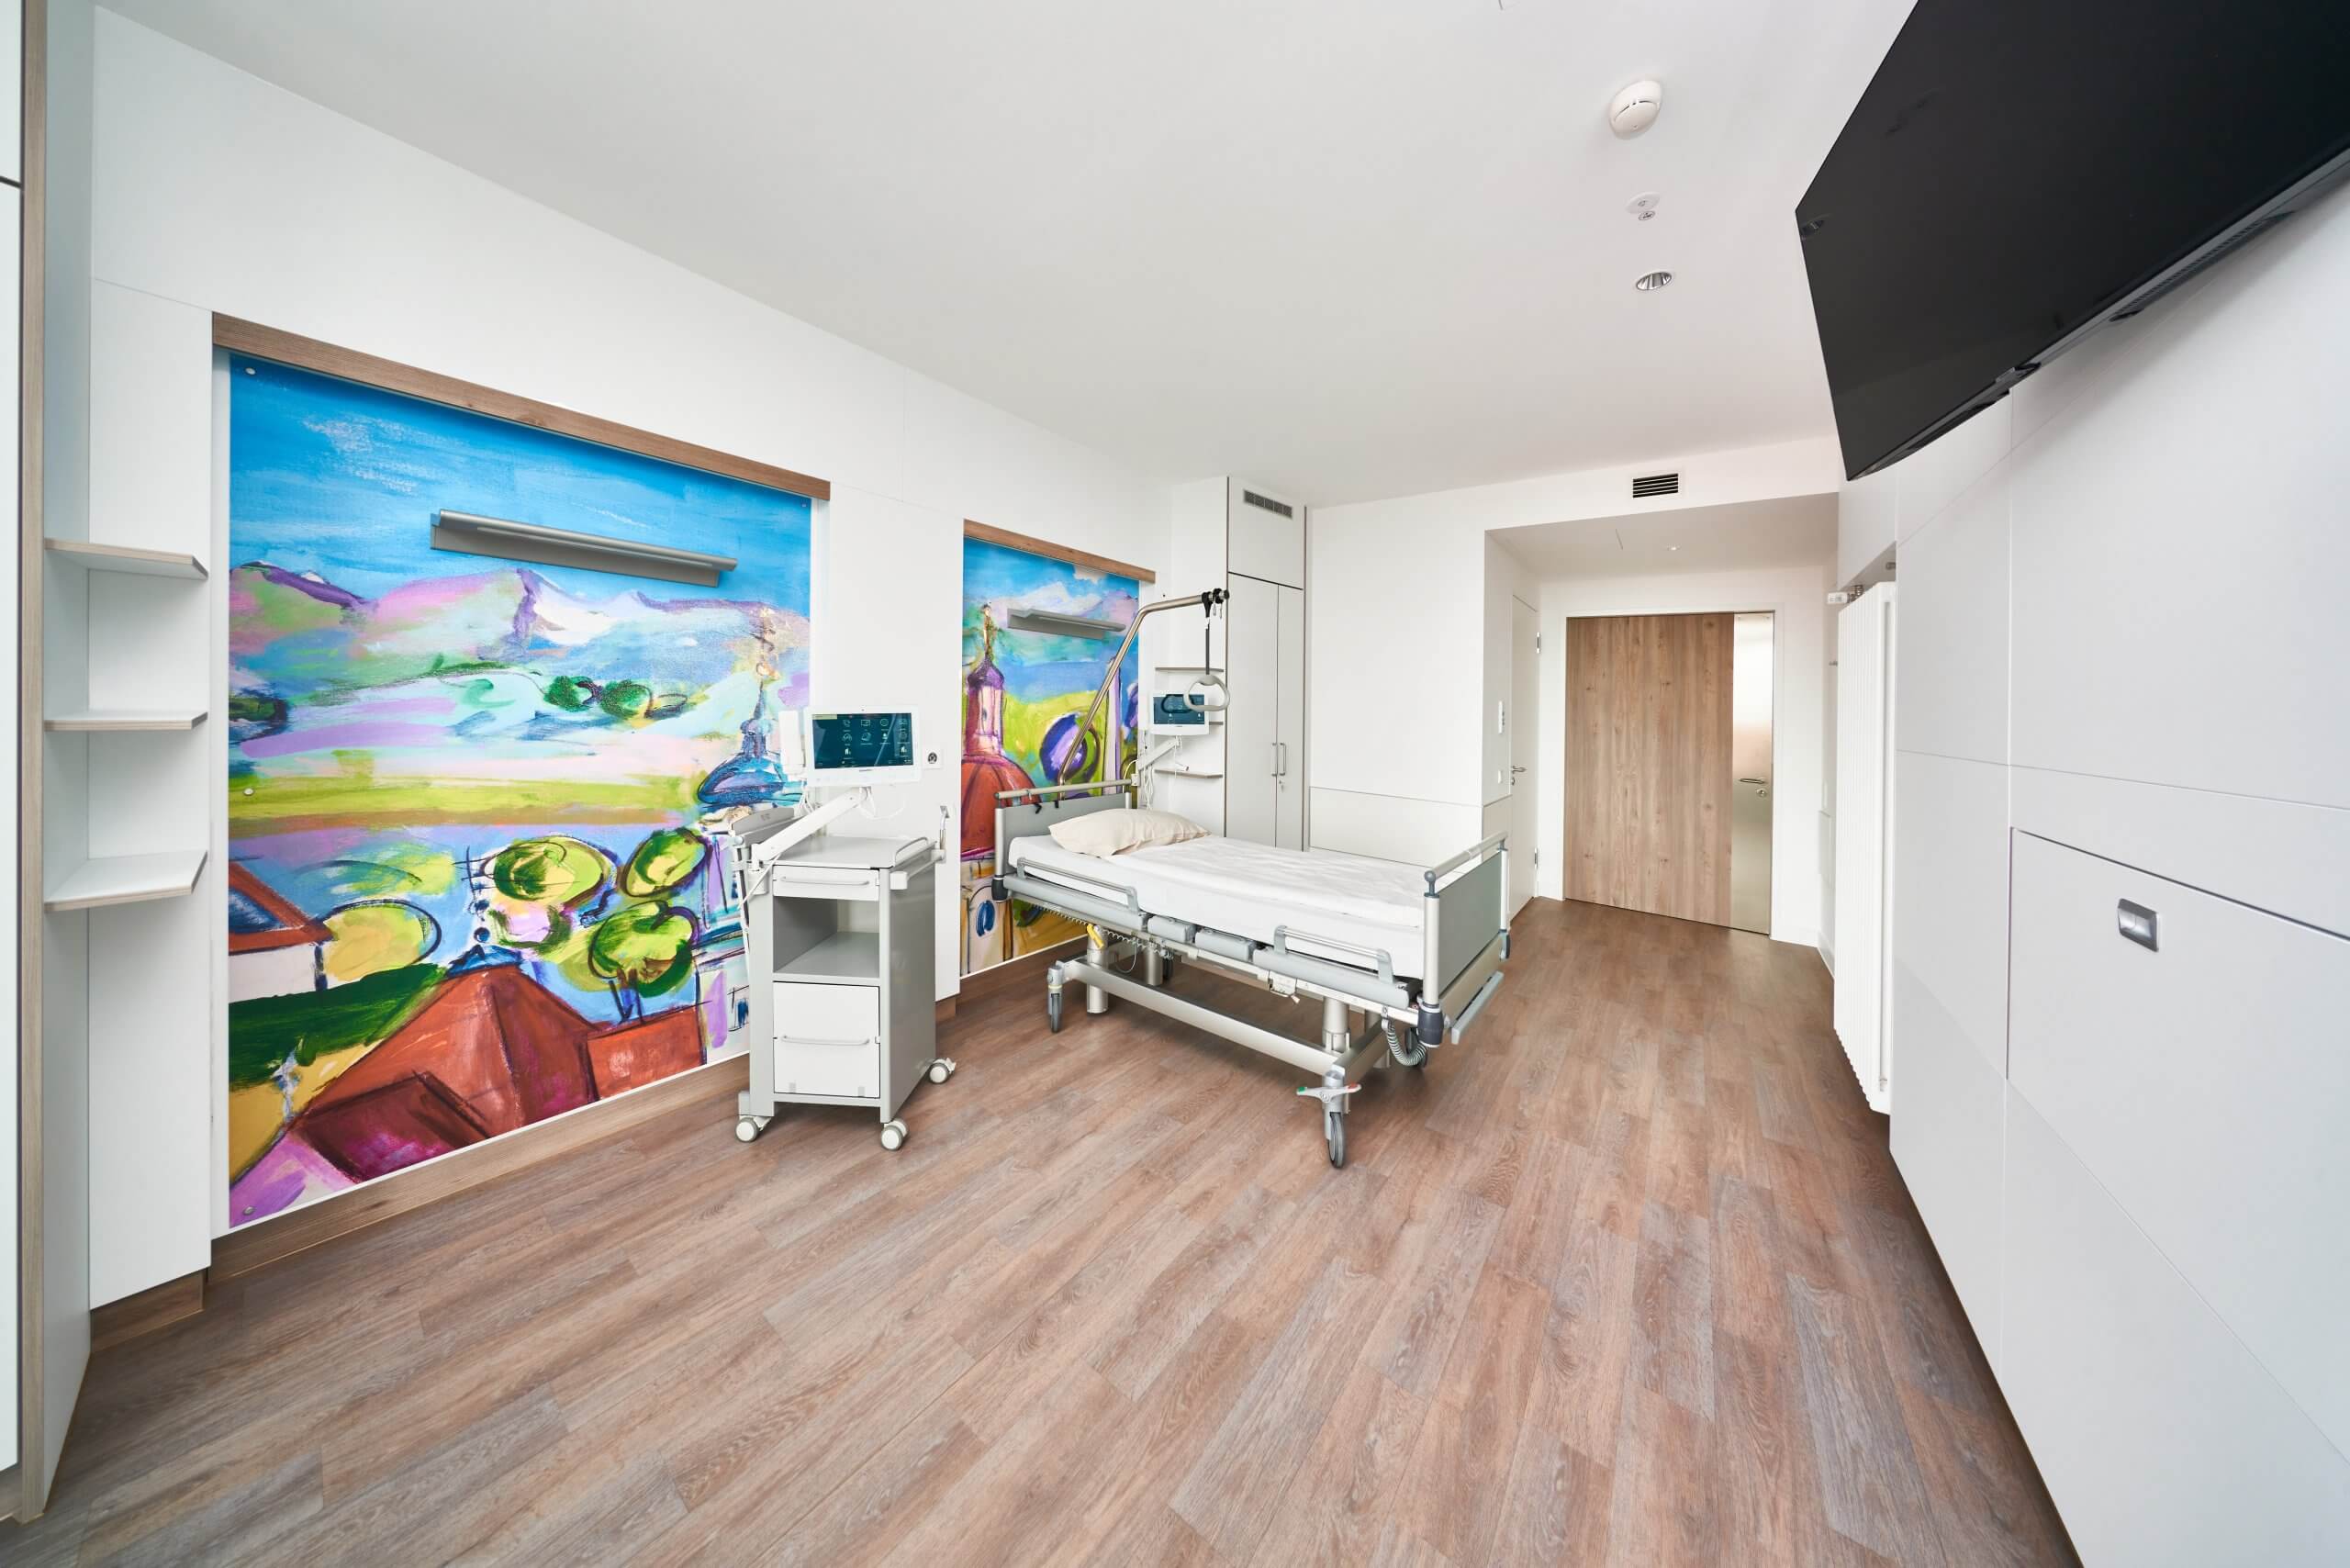 Das Bild zeigt ein Patientenzimmer in der Klinik Ottobeuren im Allgäu. Die Wände sind mit großen Werken regionaler Künstler gestaltet.